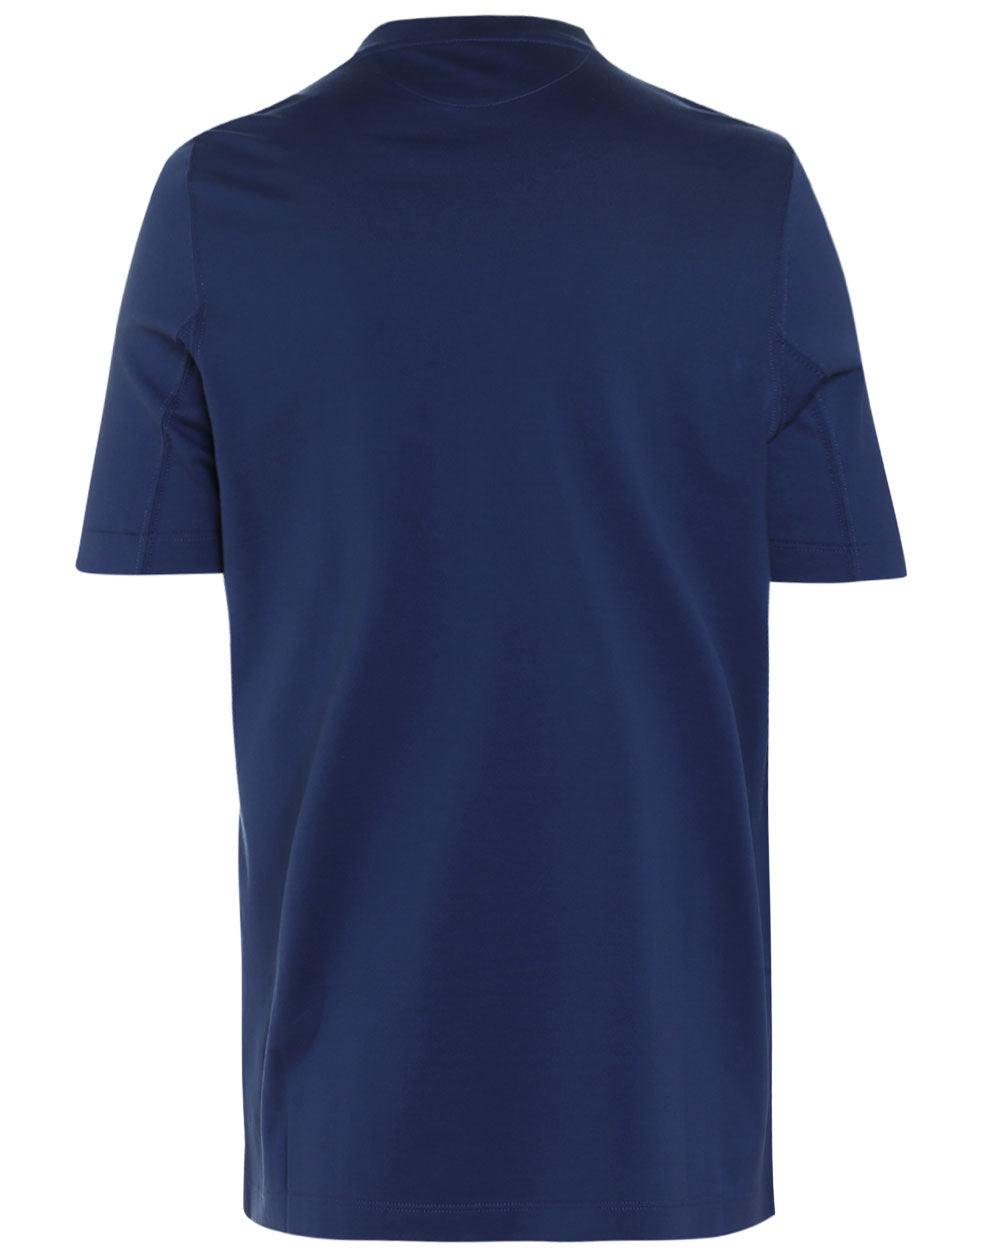 Deep Blue Cotton T-Shirt